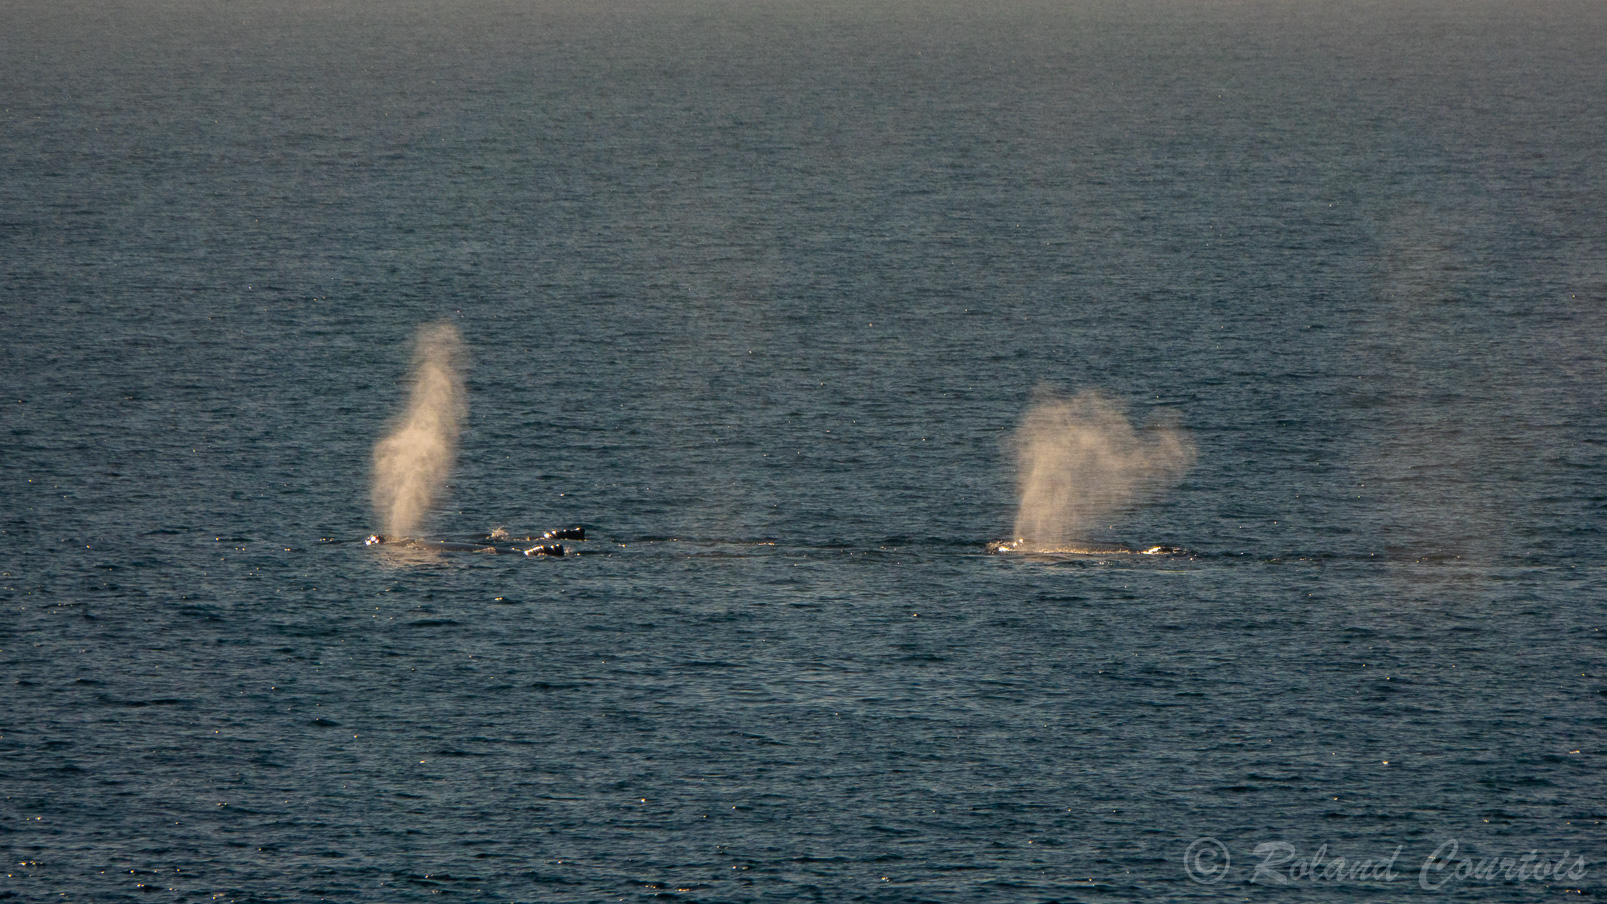 Plus tard dans la journée, des baleines à bosse sont signalées à l'horizon.